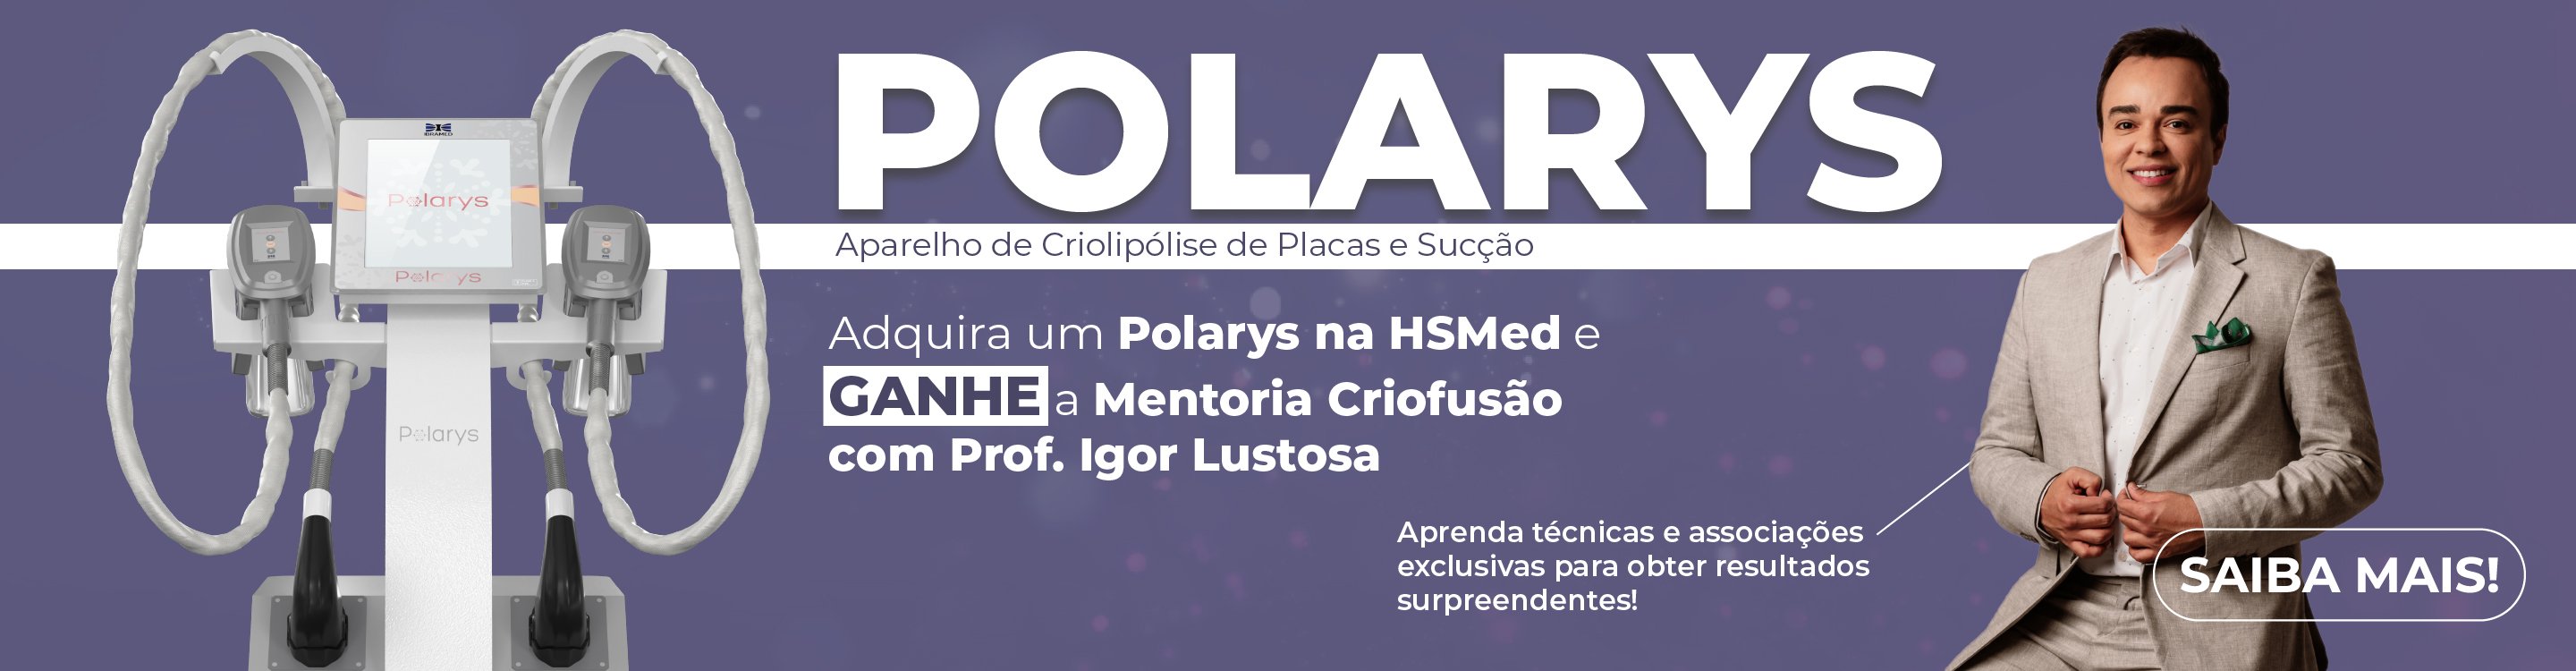 banner-polarys-desktop-100-2